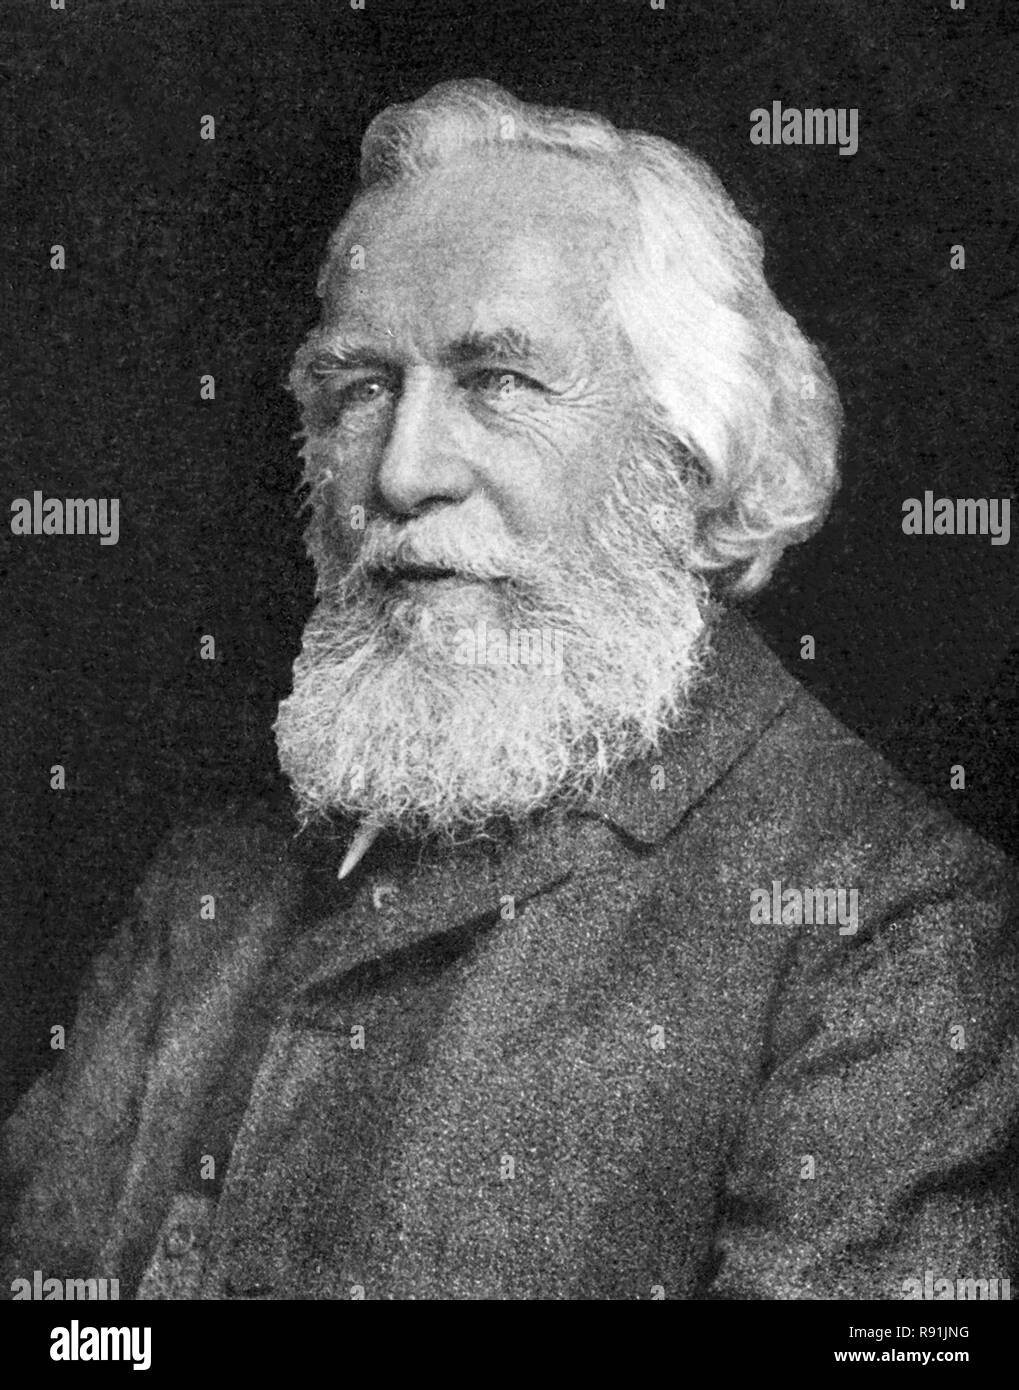 Ernst Heinrich Philipp August Haeckel (1834 - 1919) biologiste allemand, naturaliste, professeur et spécialiste de la biologie marine Banque D'Images